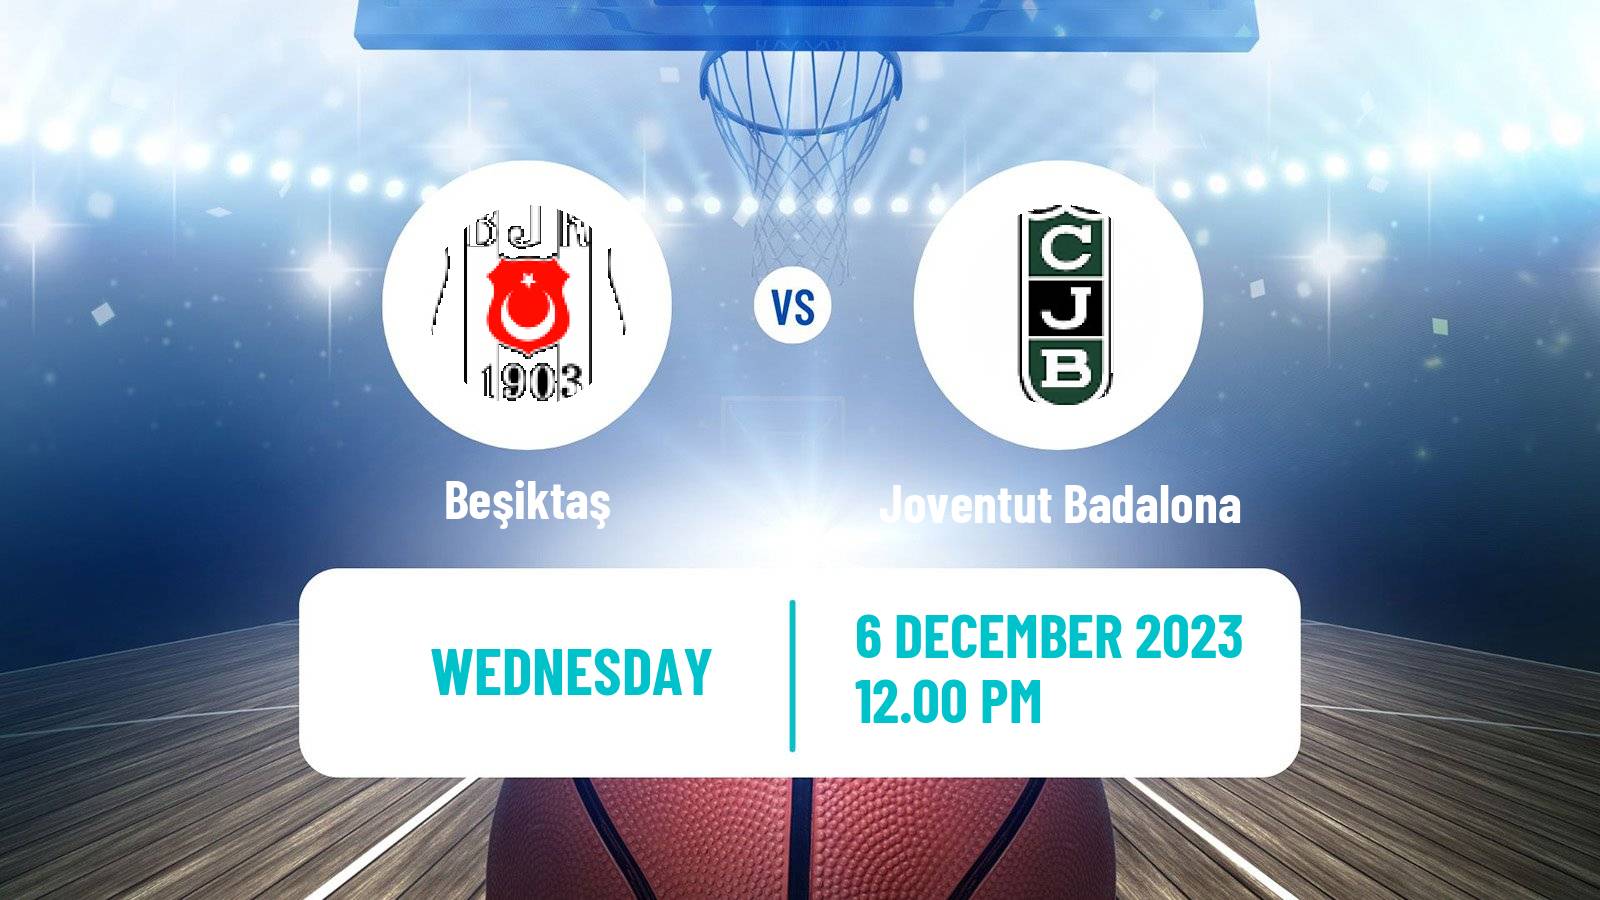 Basketball Eurocup Beşiktaş - Joventut Badalona